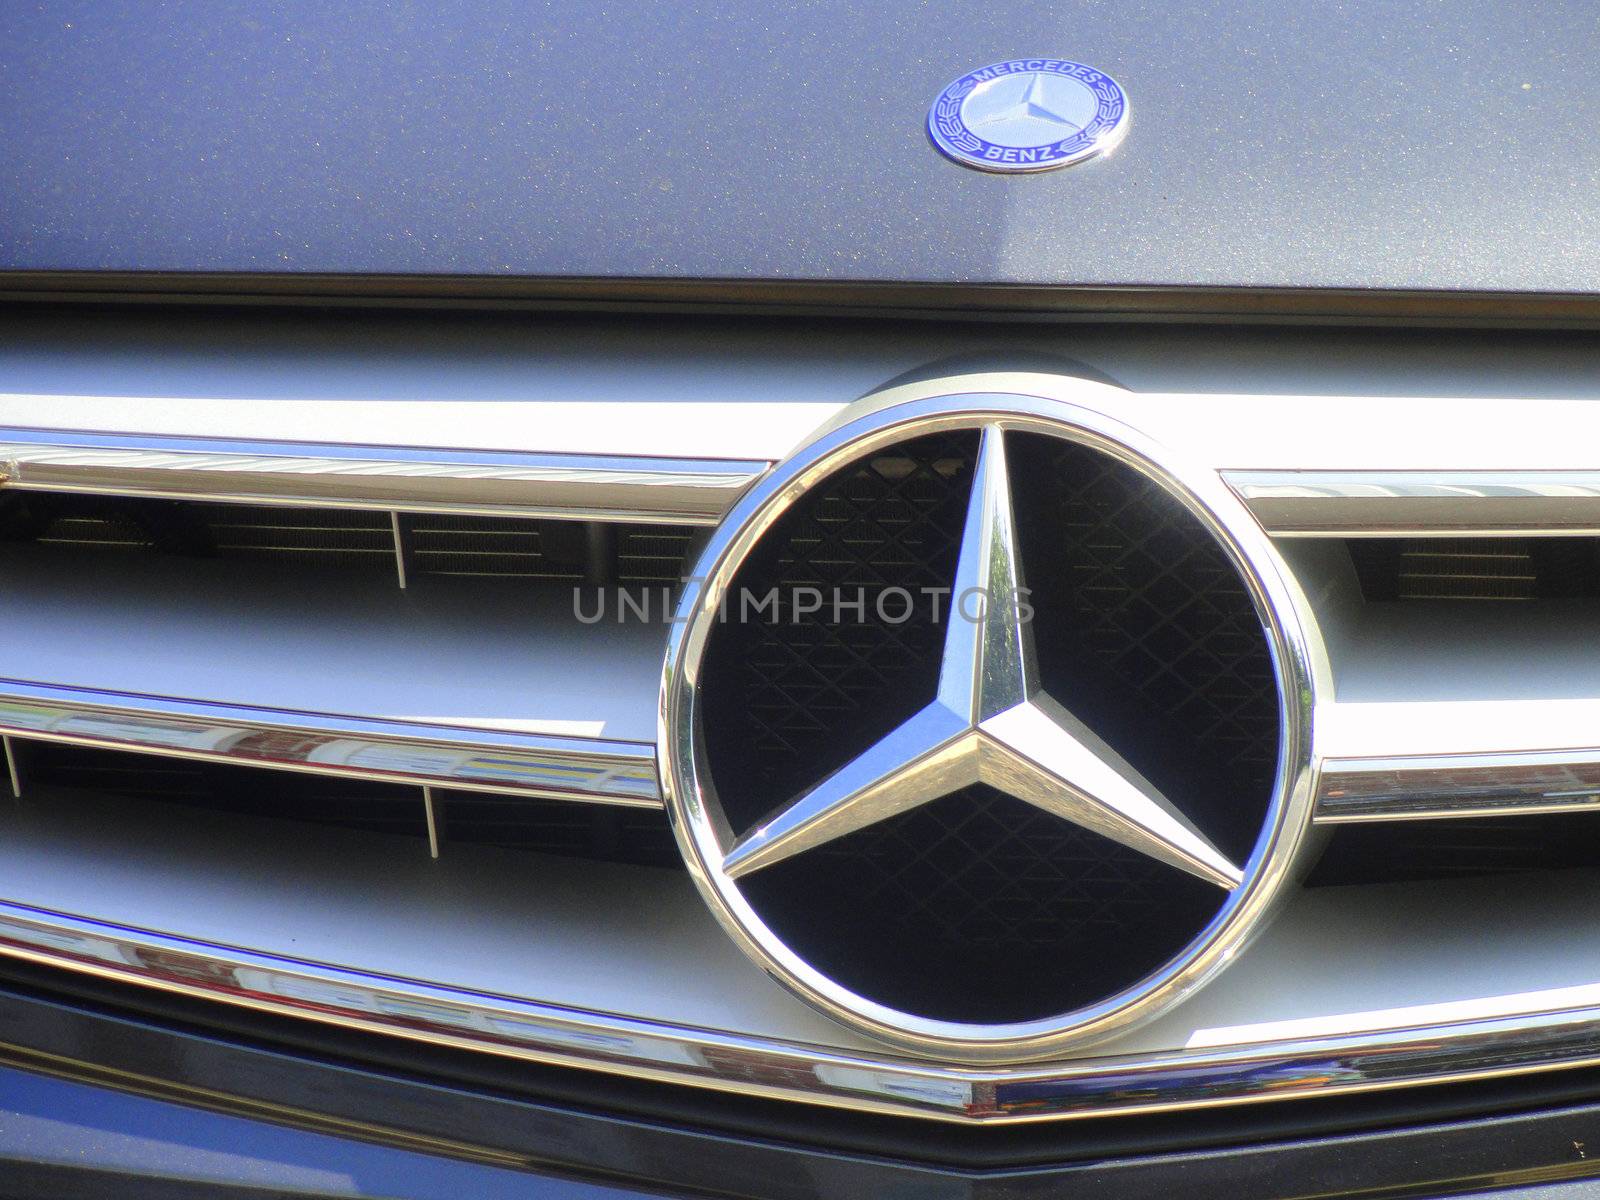 Mercedes Benz. by oscarcwilliams